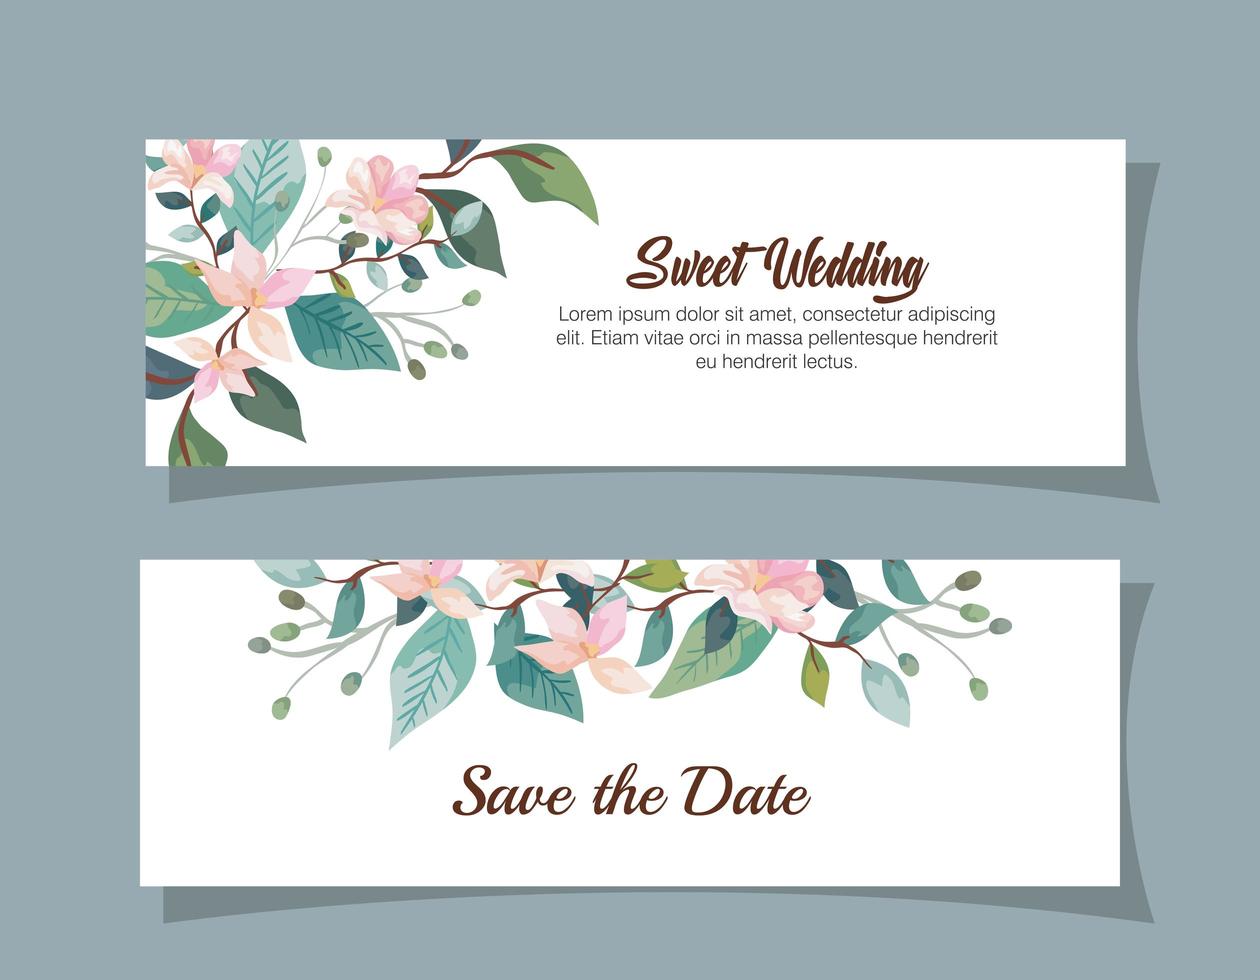 conjunto de tarjetas de invitación de boda con decoración de flores vector